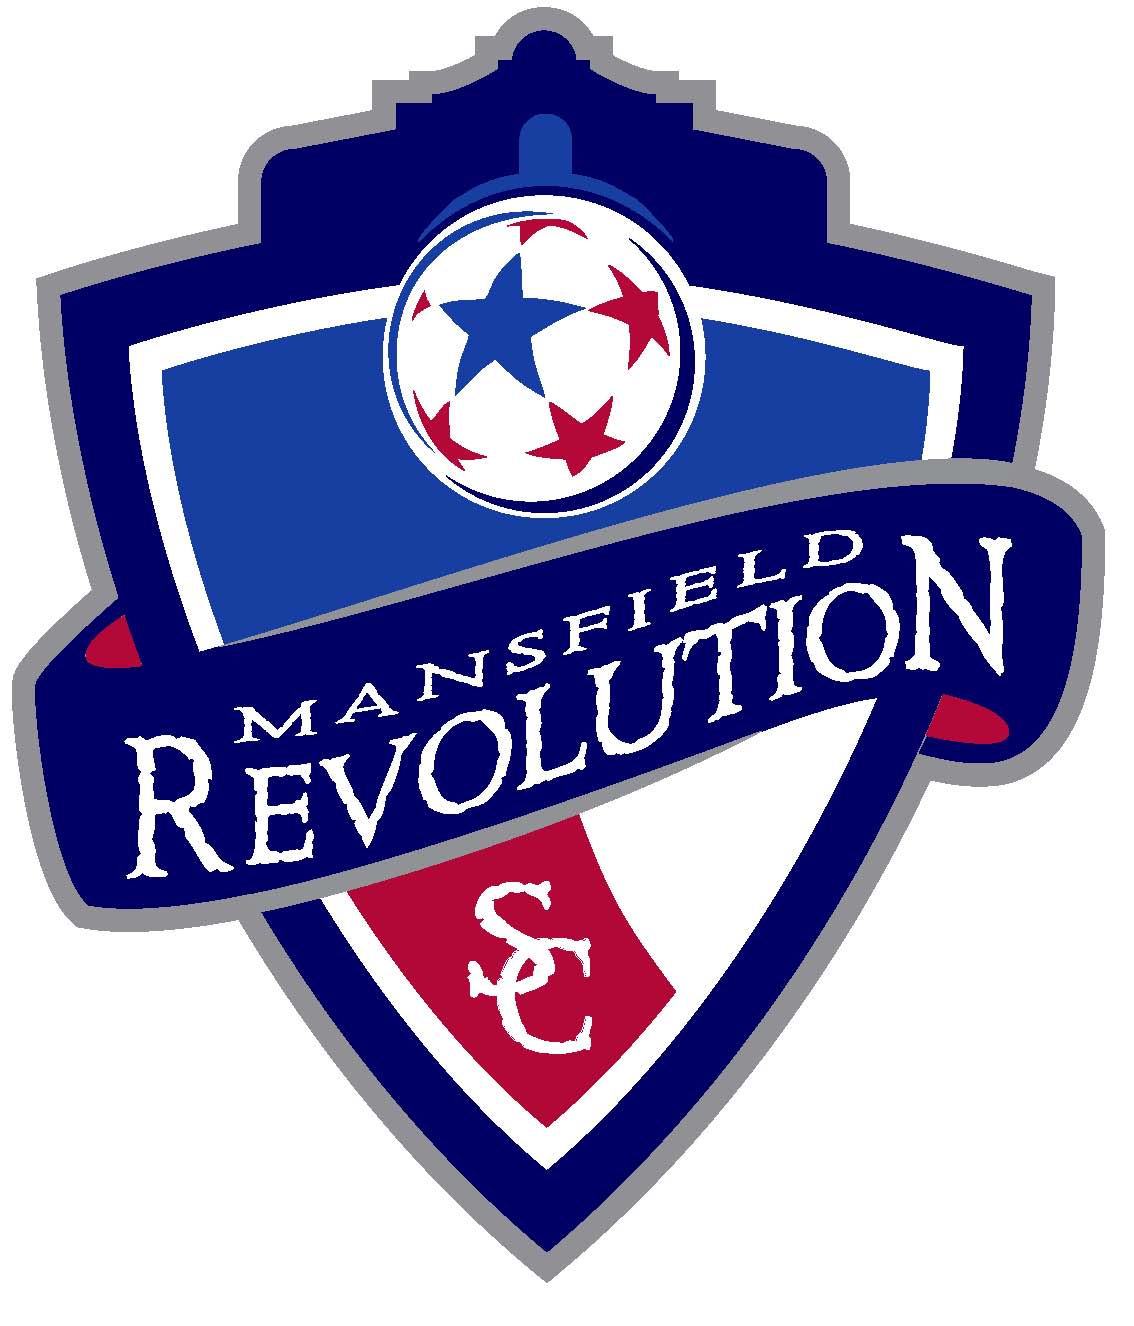 Mansfield Revolution SC team badge